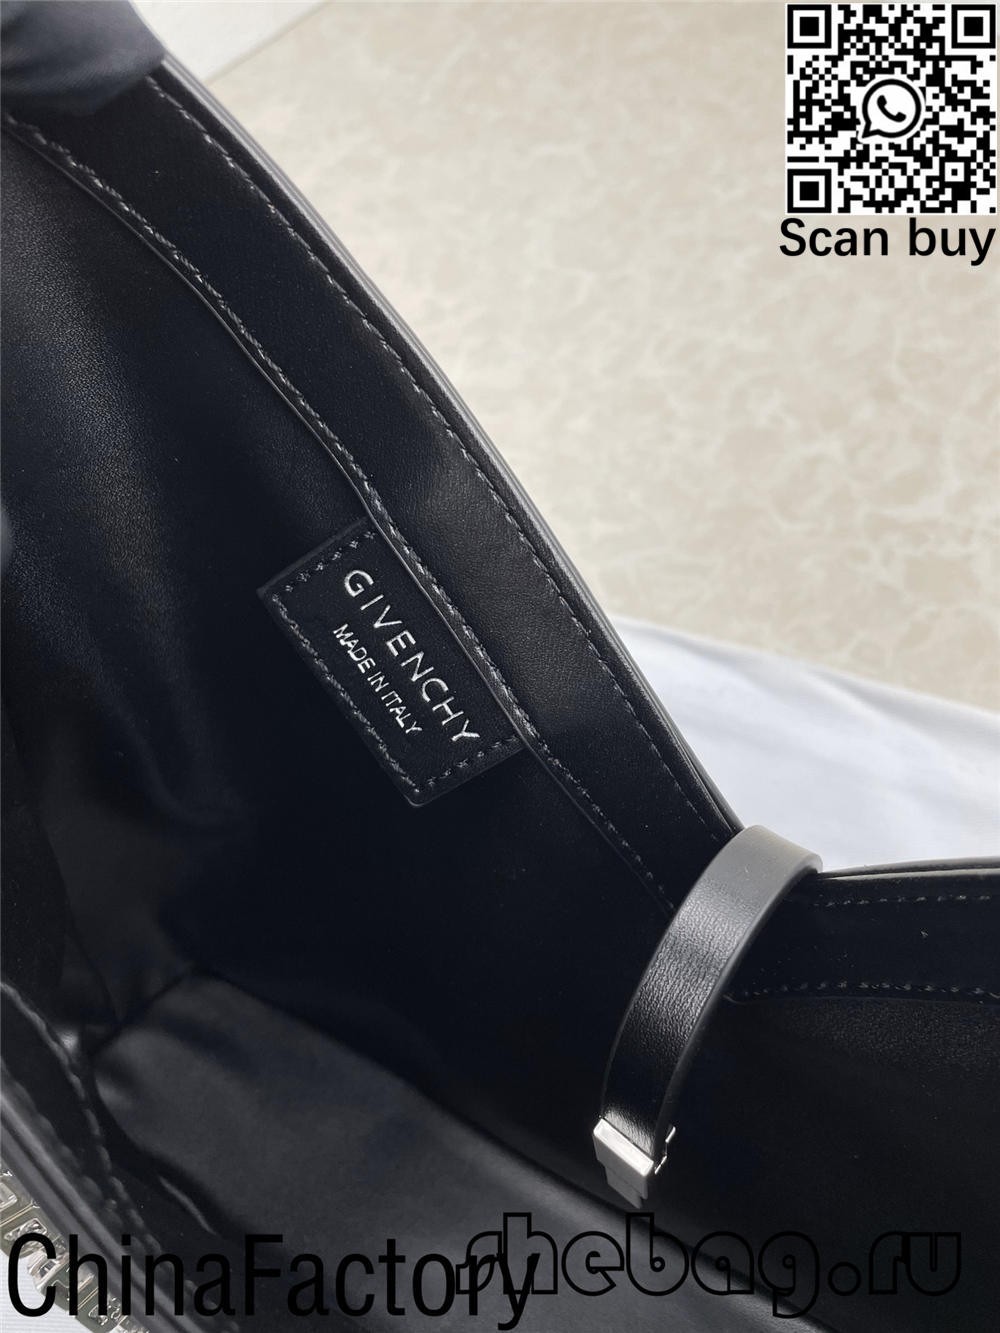 Givenchy အနက်ရောင်အိတ်ပုံတူ- Givenchy Cut-Out (2022 အပ်ဒိတ်လုပ်ထားသည်)- အကောင်းဆုံးအရည်အသွေးအတု Louis Vuitton Bag အွန်လိုင်းစတိုး၊ ပုံတူဒီဇိုင်နာအိတ် ru